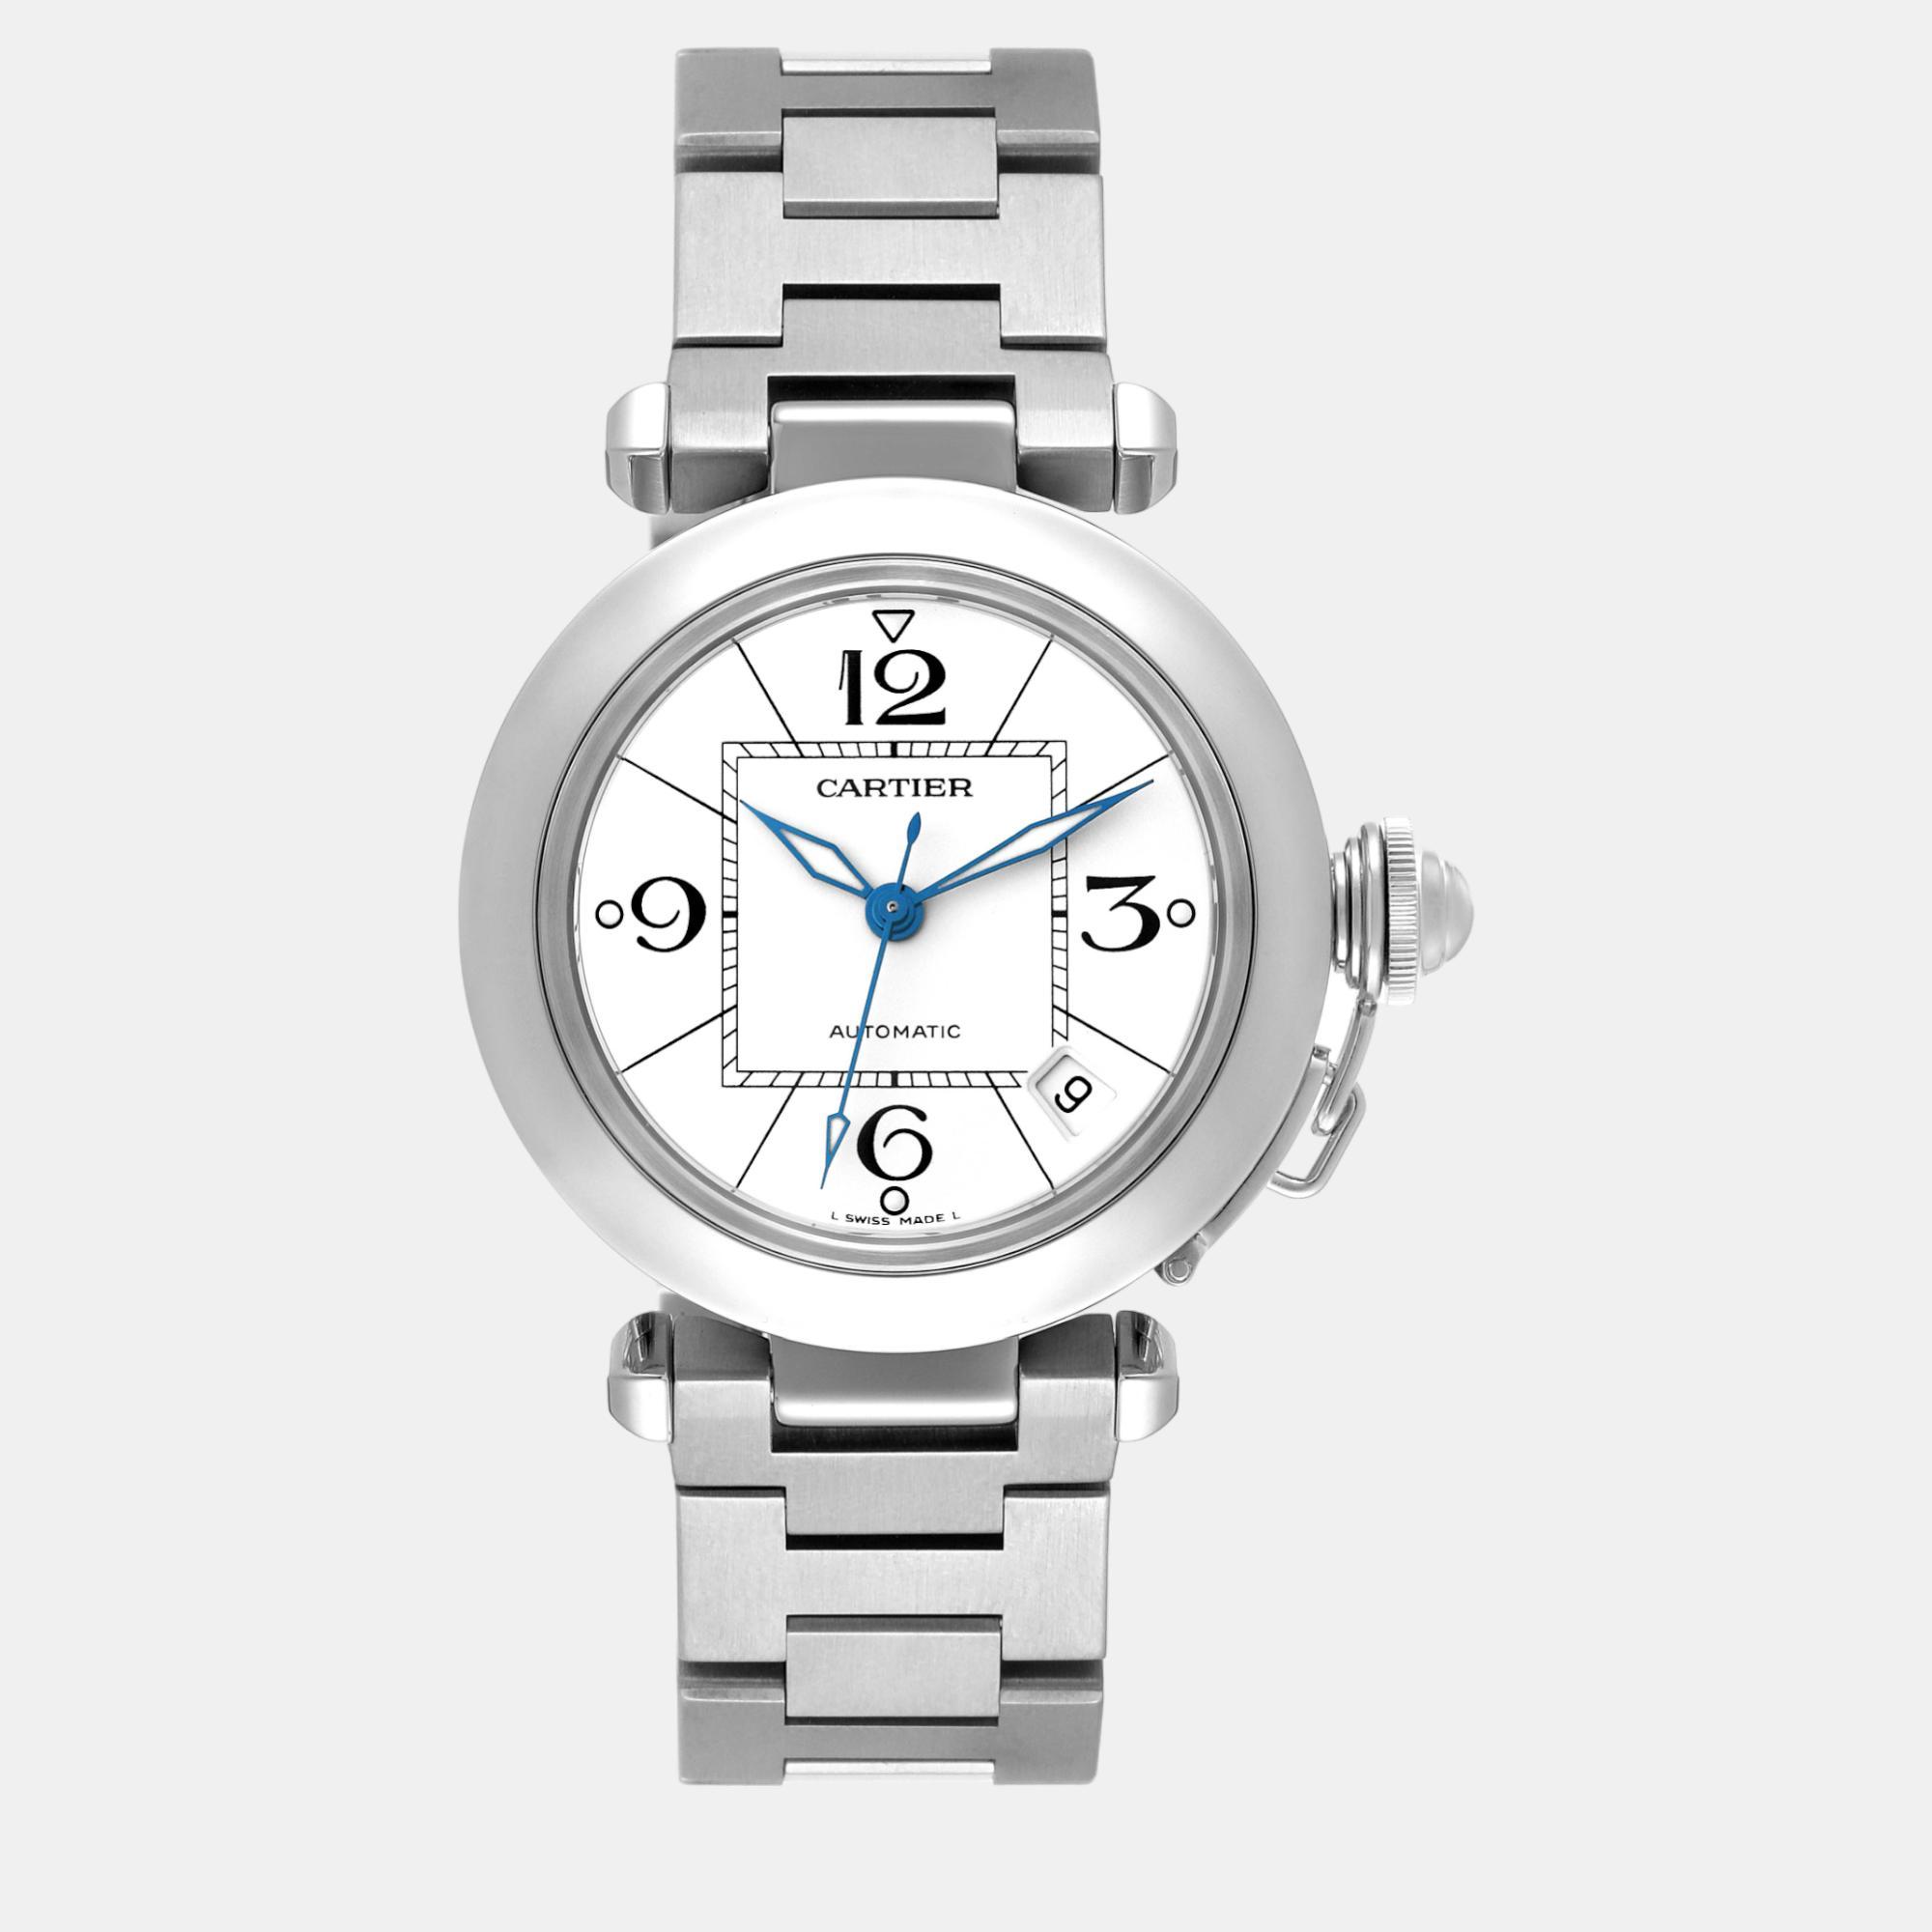 Cartier pasha c midsize white dial automatic steel men's watch  35 mm